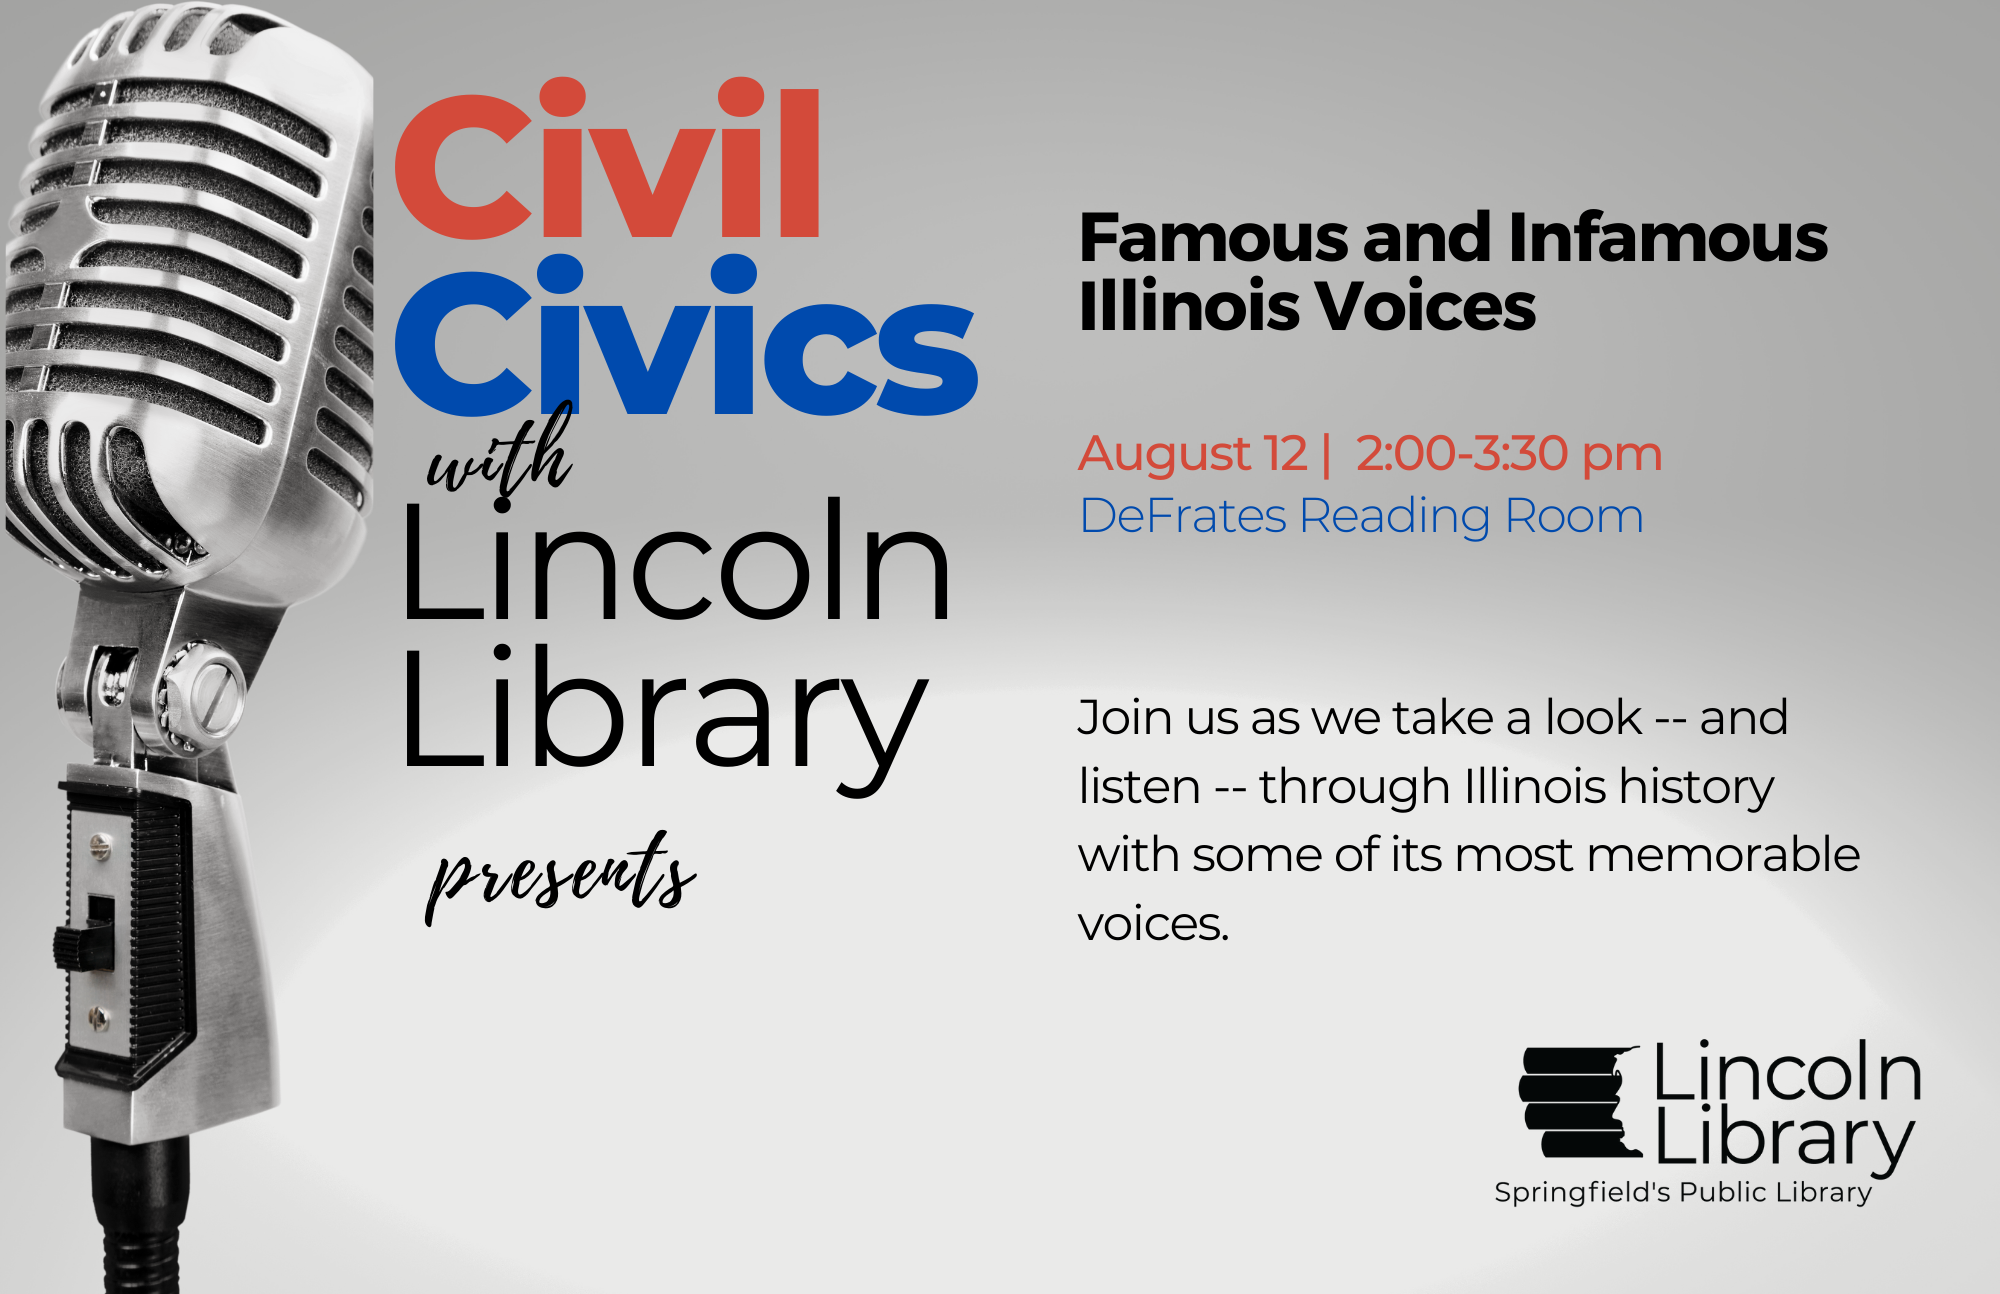 Civil Civics_Famous and Infamous Illinois Voices